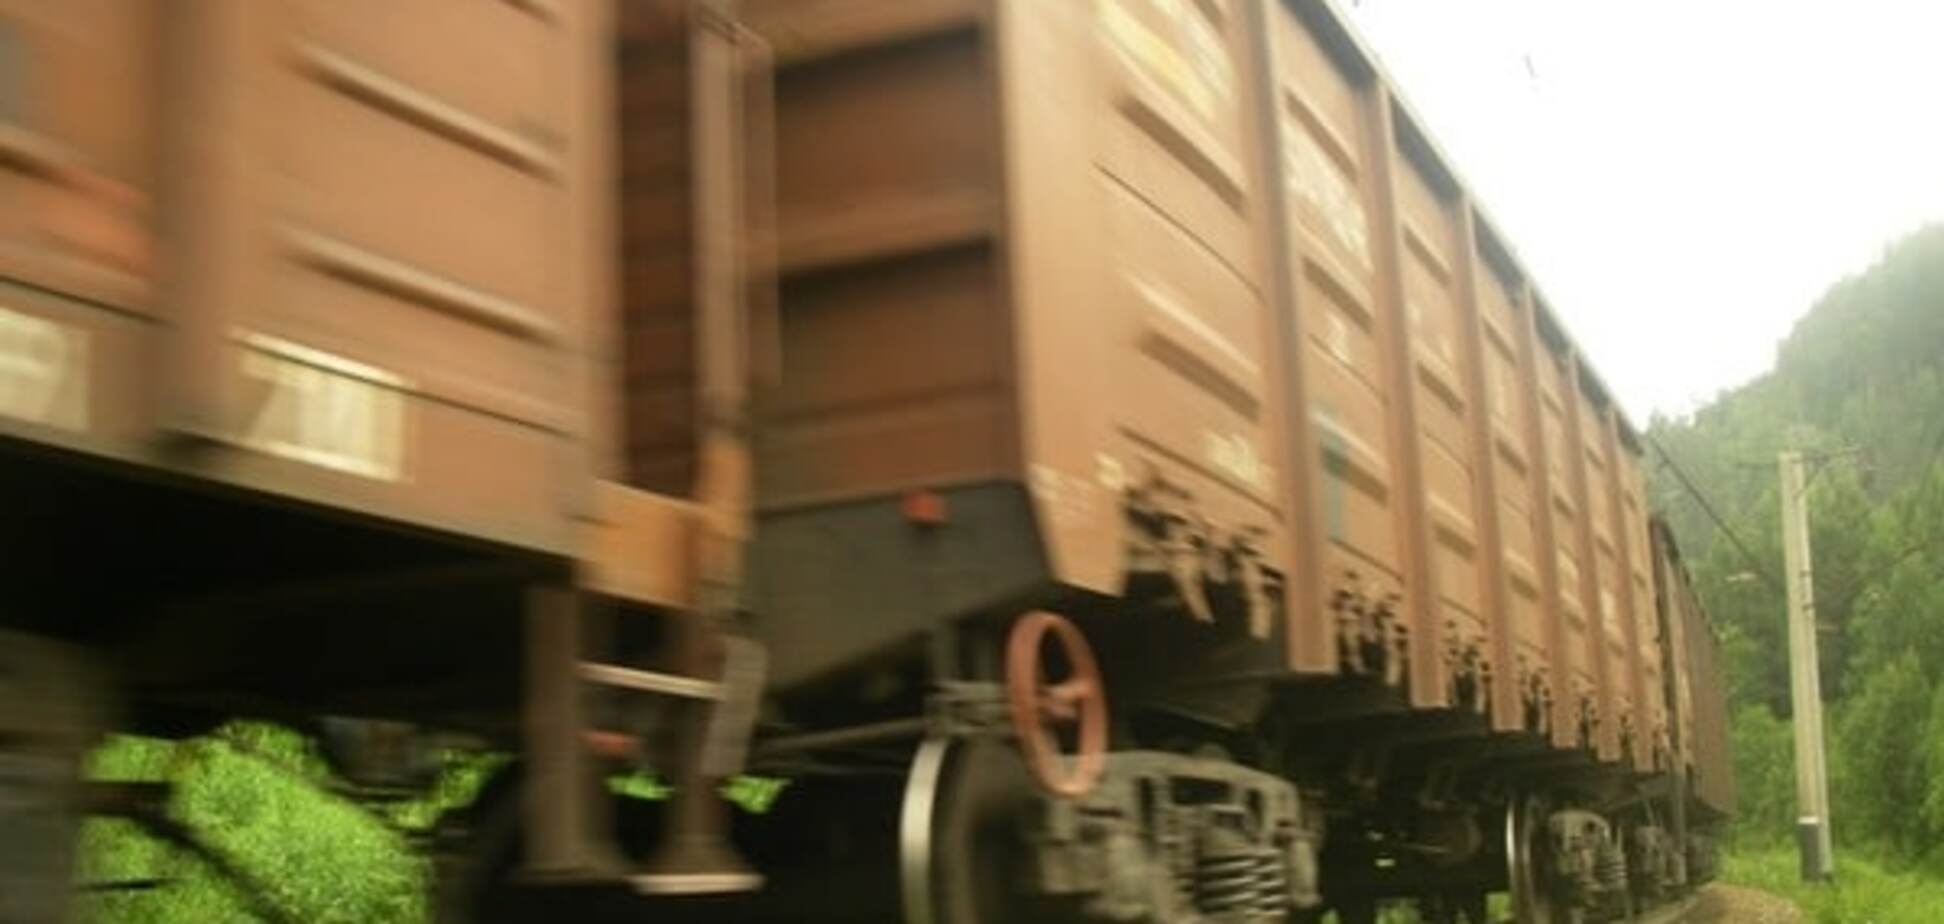 Сольвар получит контроль над парком грузовых вагонов УЗ - Сазонов